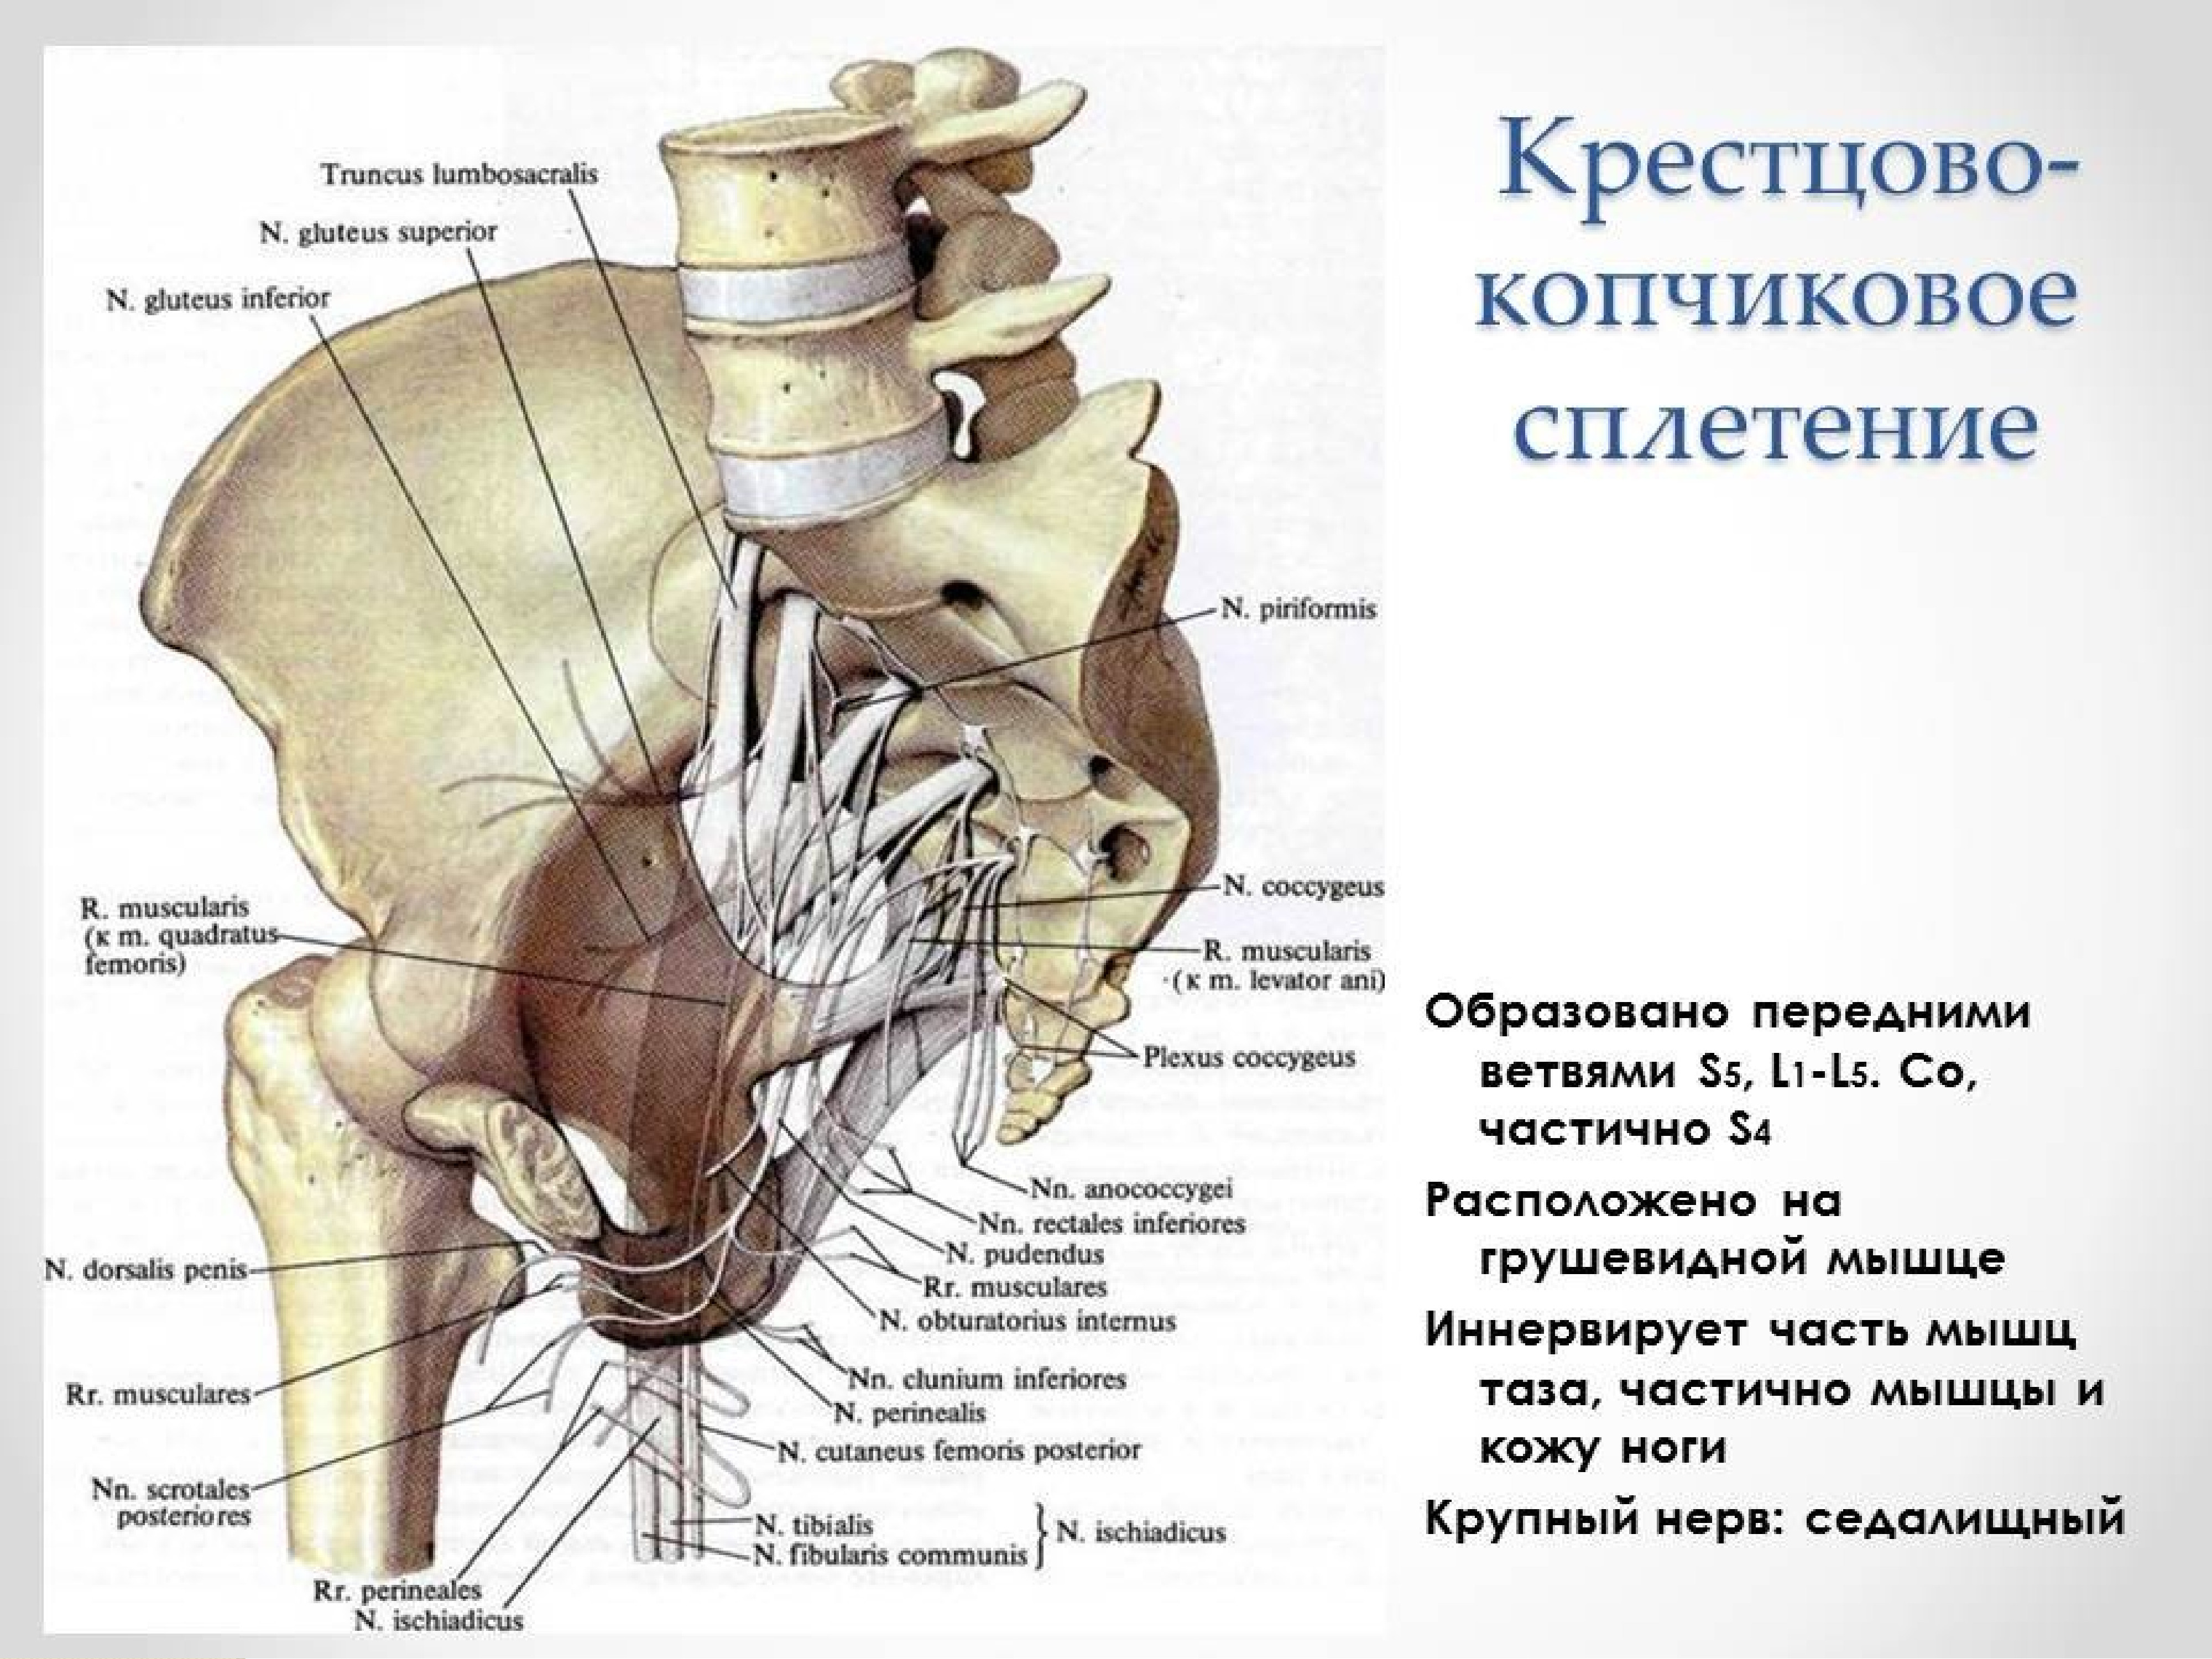 Мышцы крестца и копчика анатомия